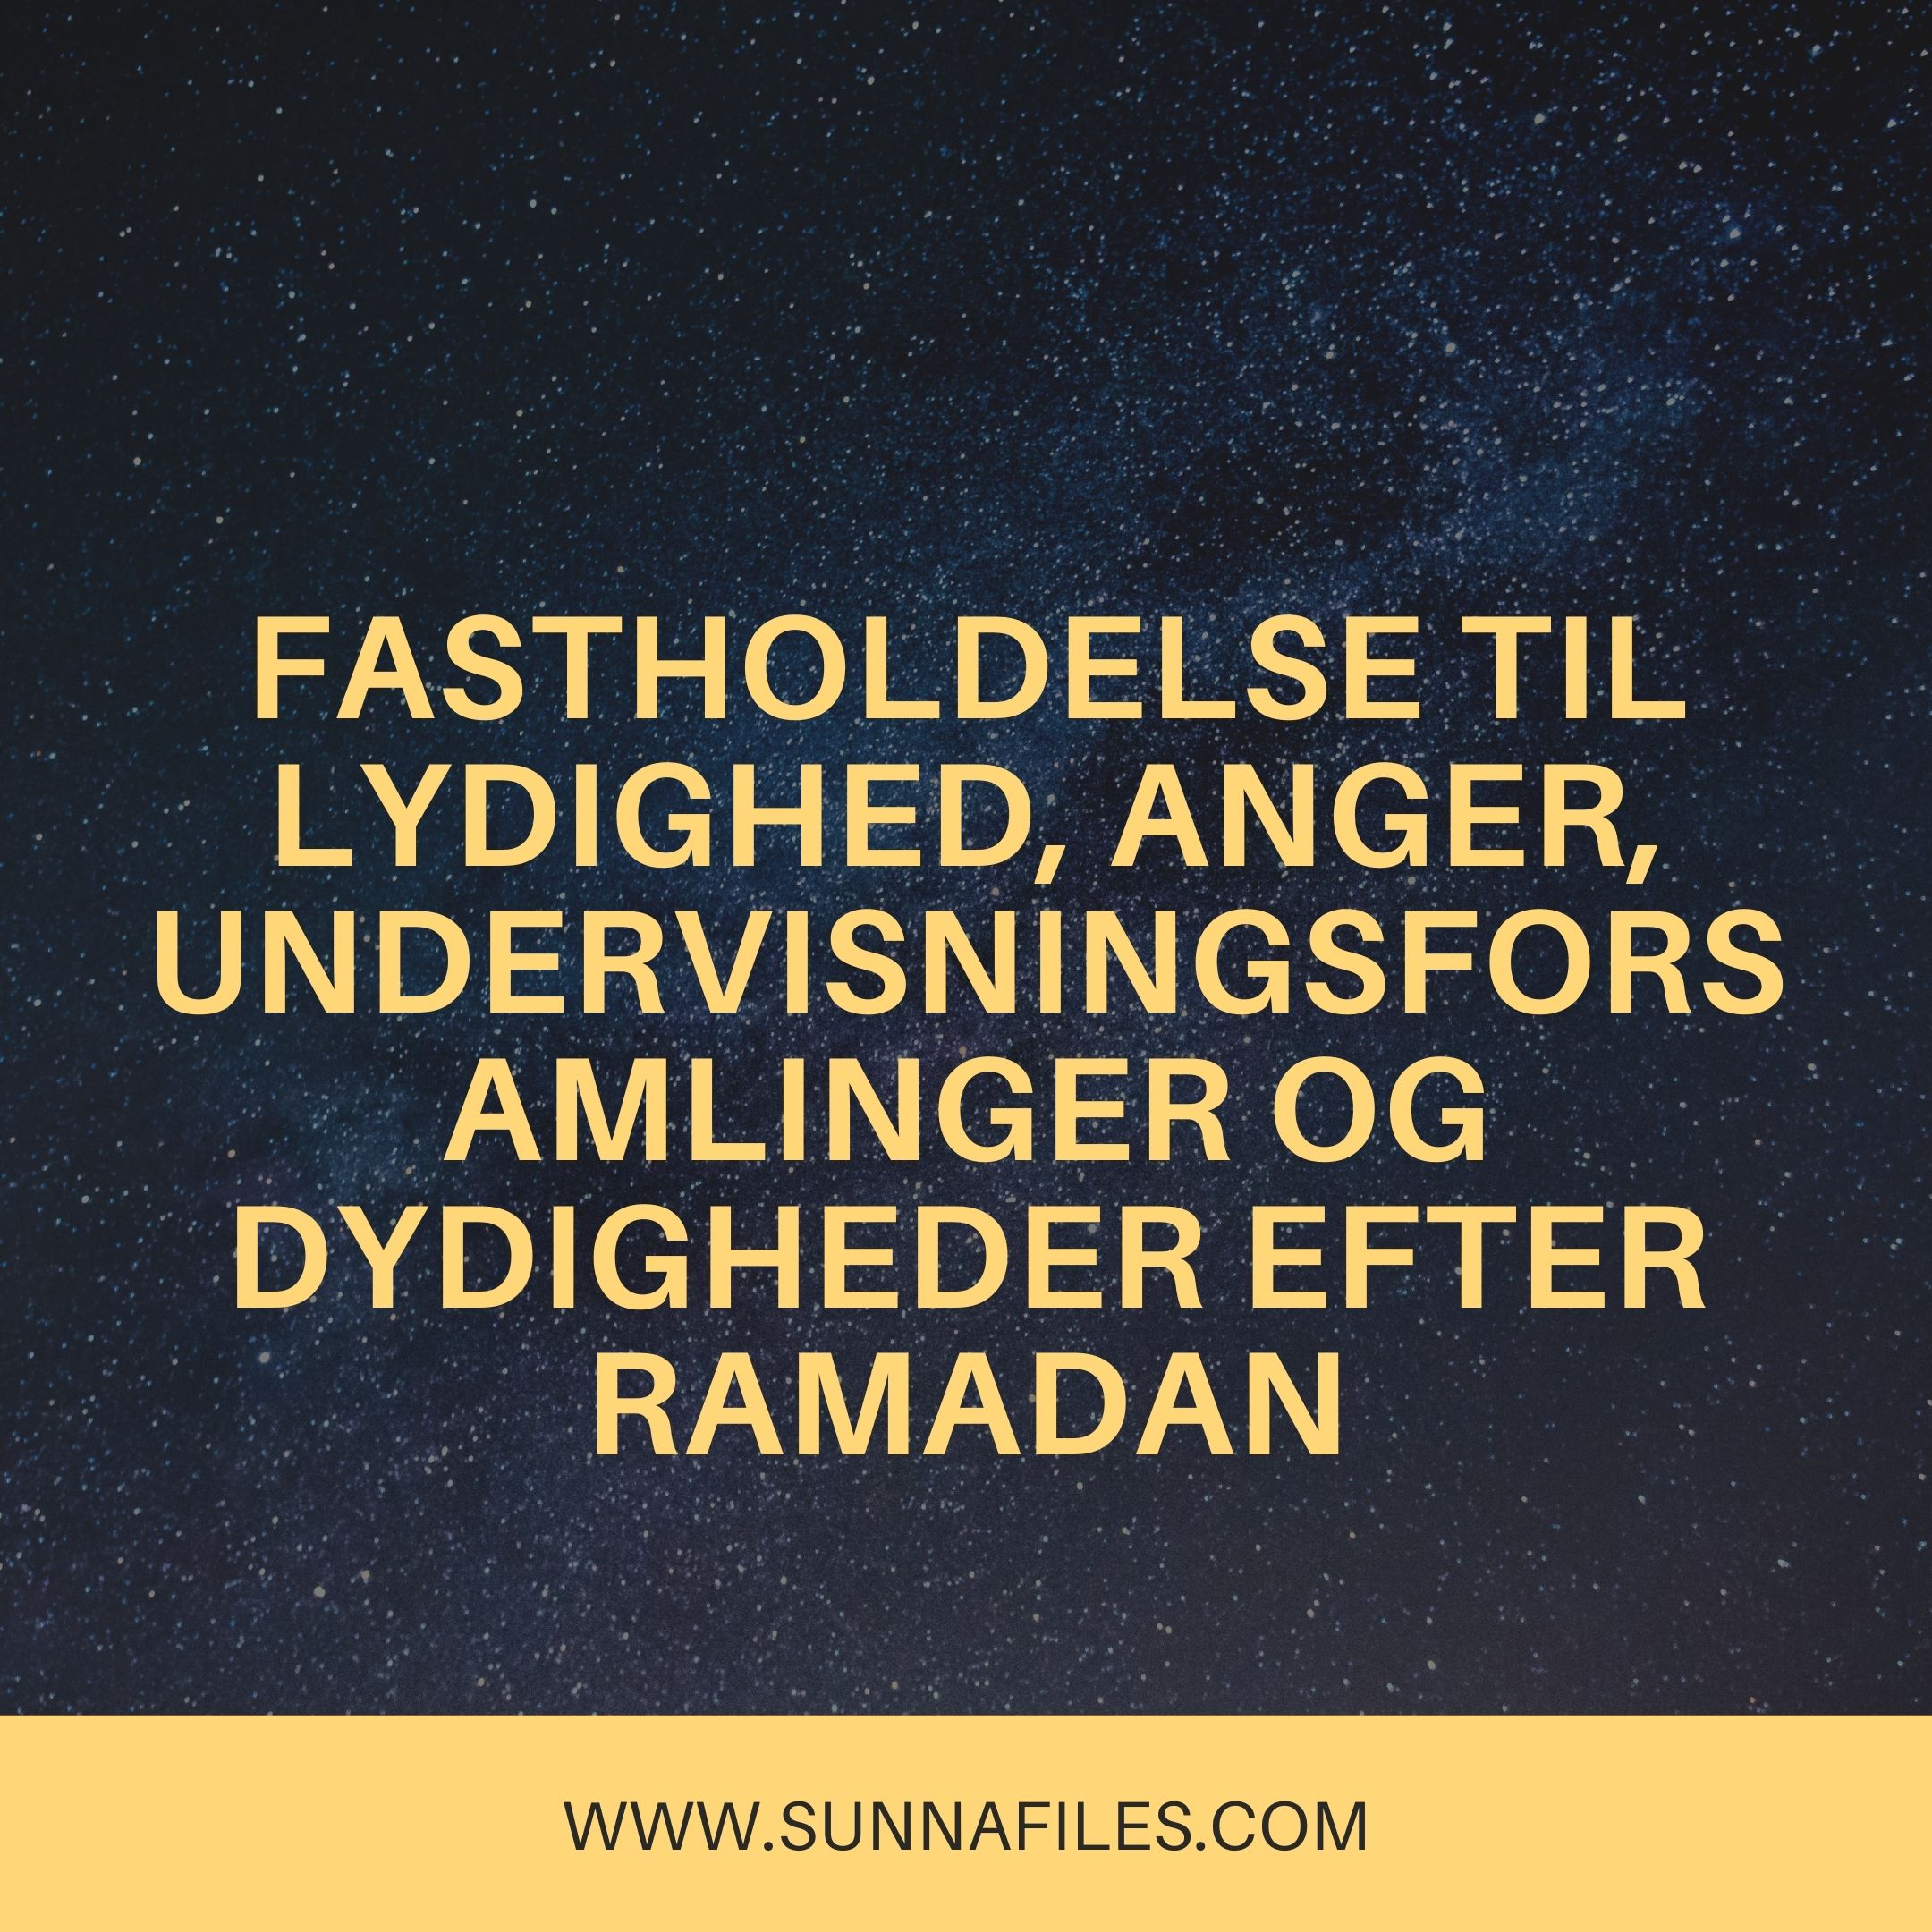 Fastholdelse til lydighed, anger, undervisningsforsamlinger Ramadan – شبكة أهل السنة والجماعة